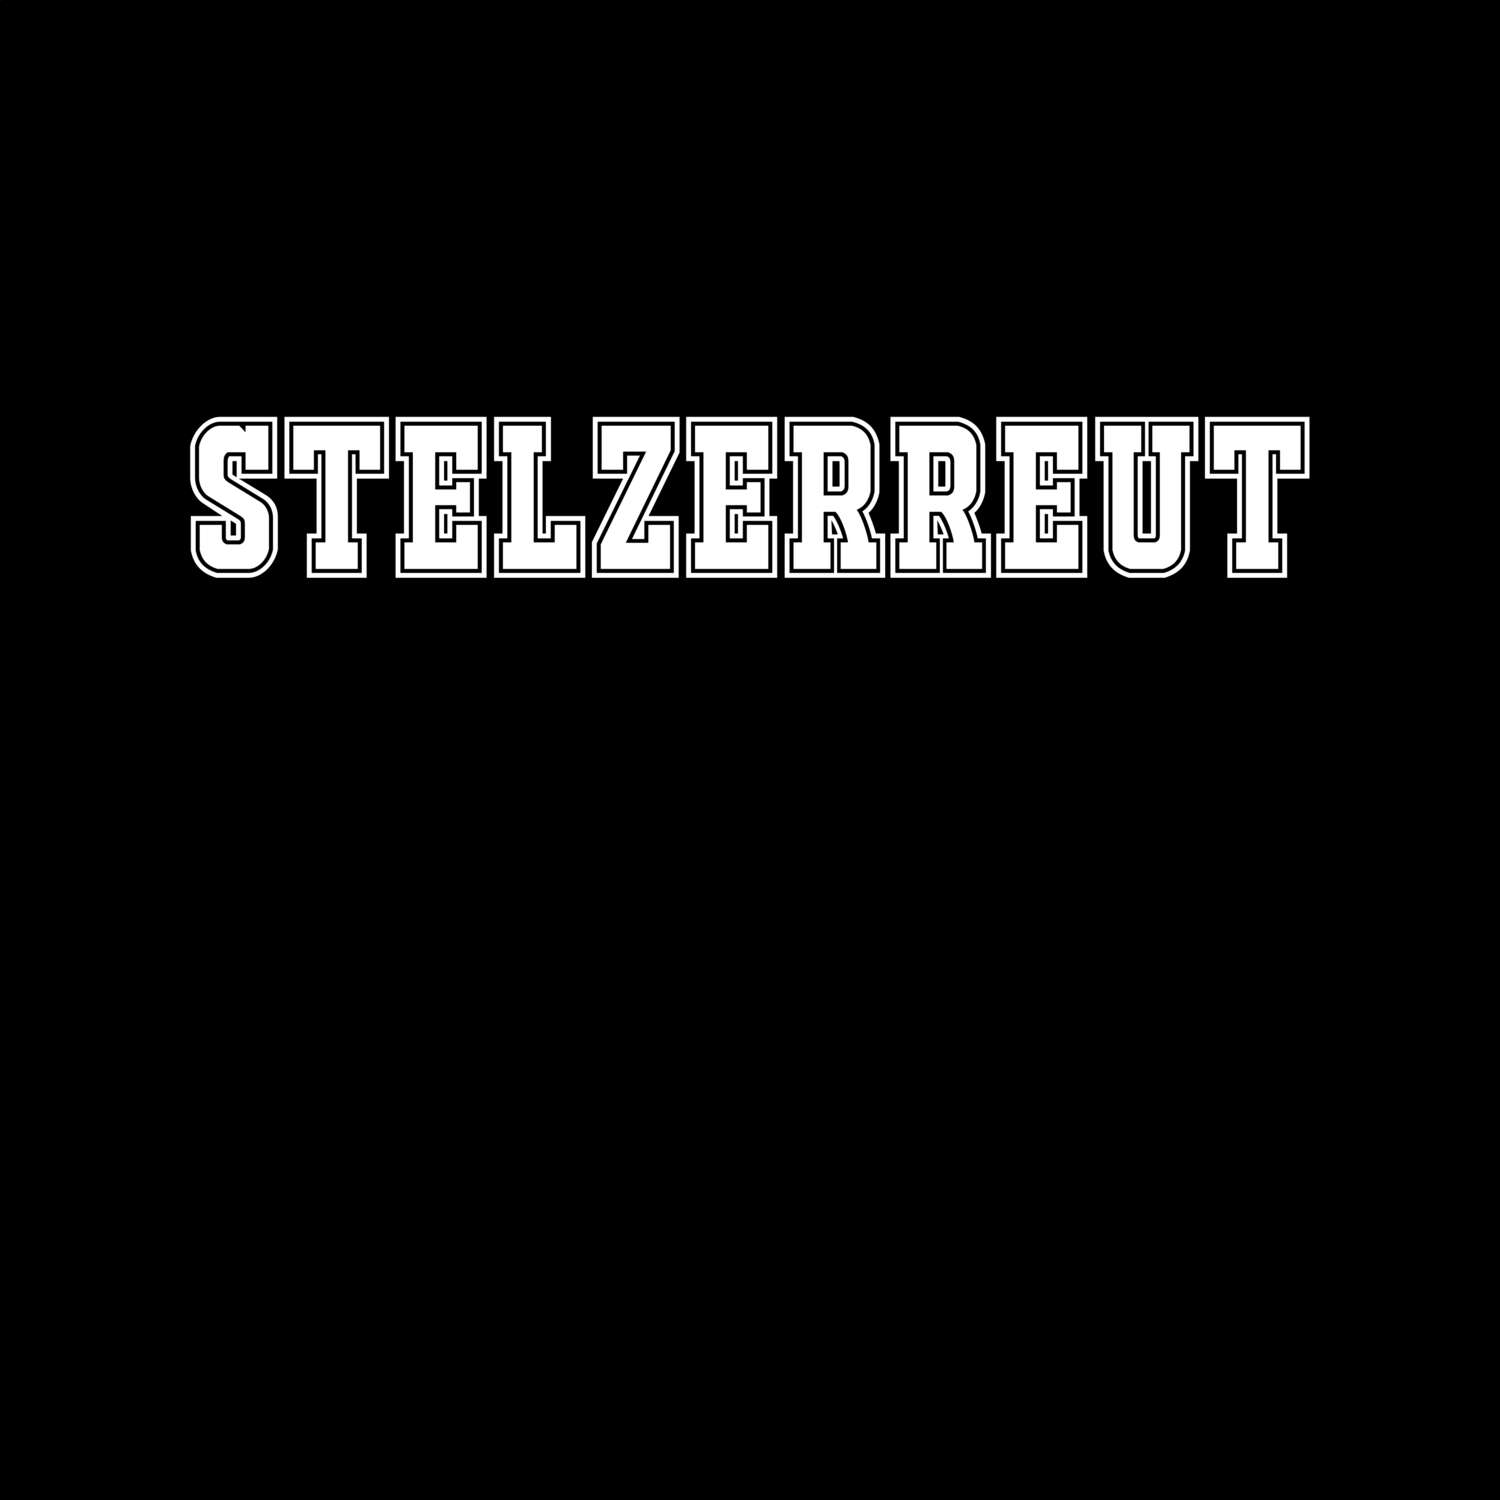 Stelzerreut T-Shirt »Classic«